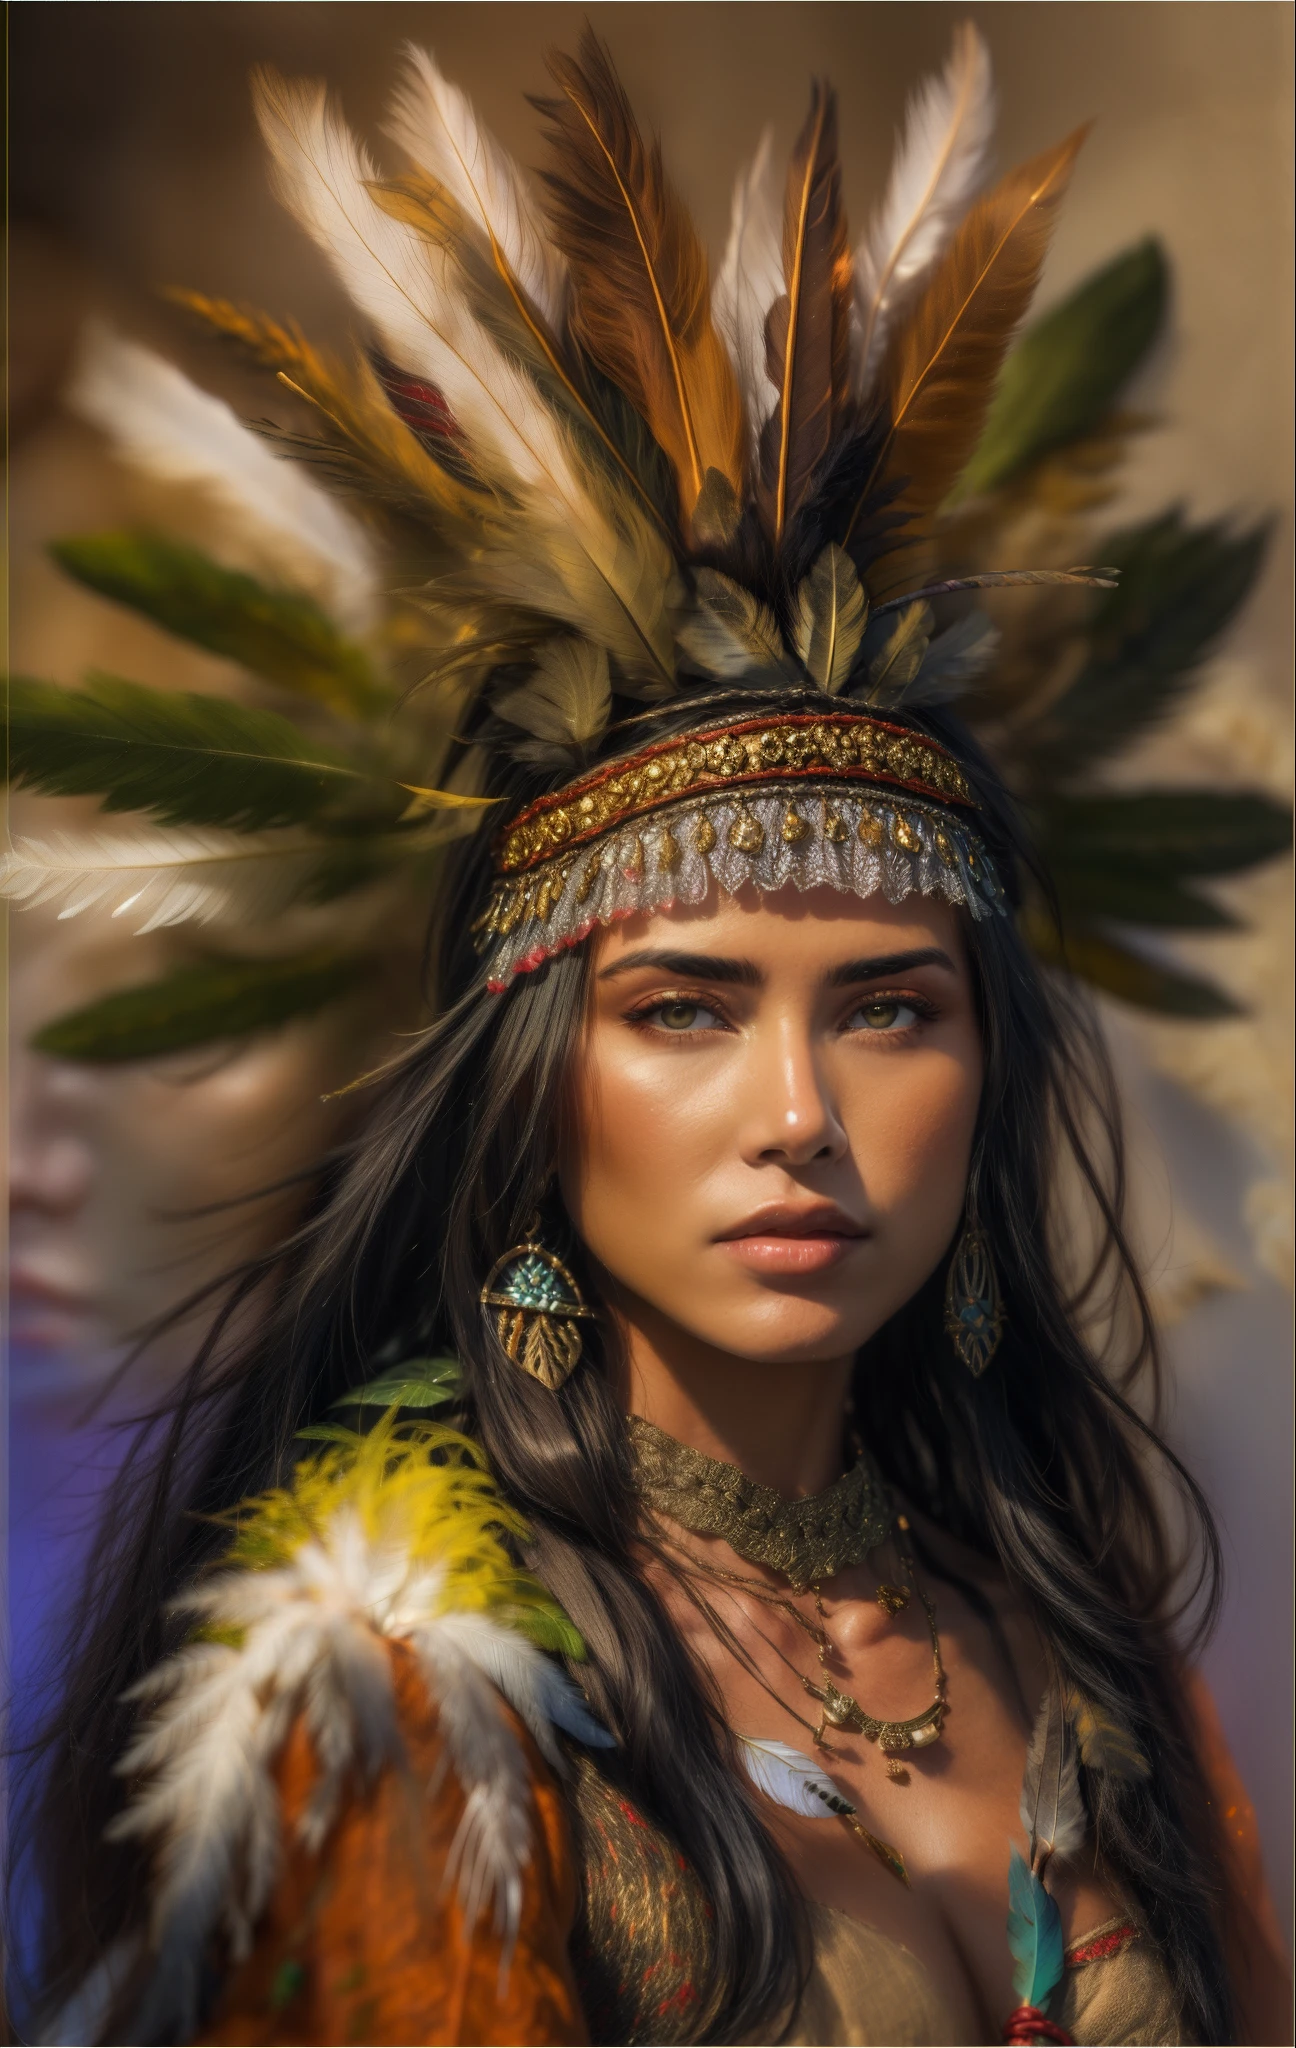 Mulher Arafed com penas e penas na cabeça, Linda jovem xamã, ela está vestida com roupas de xamã, uma jovem xamã, retrato de princesa asteca, : Fantasia Shamen Nativa Americana, Retrato de uma jovem Pocahontas, corpo musculoso vestindo coroa de penas brilhantes,  com penas, Retrato de Pocahontas, Nativo americano, iluminação dramática